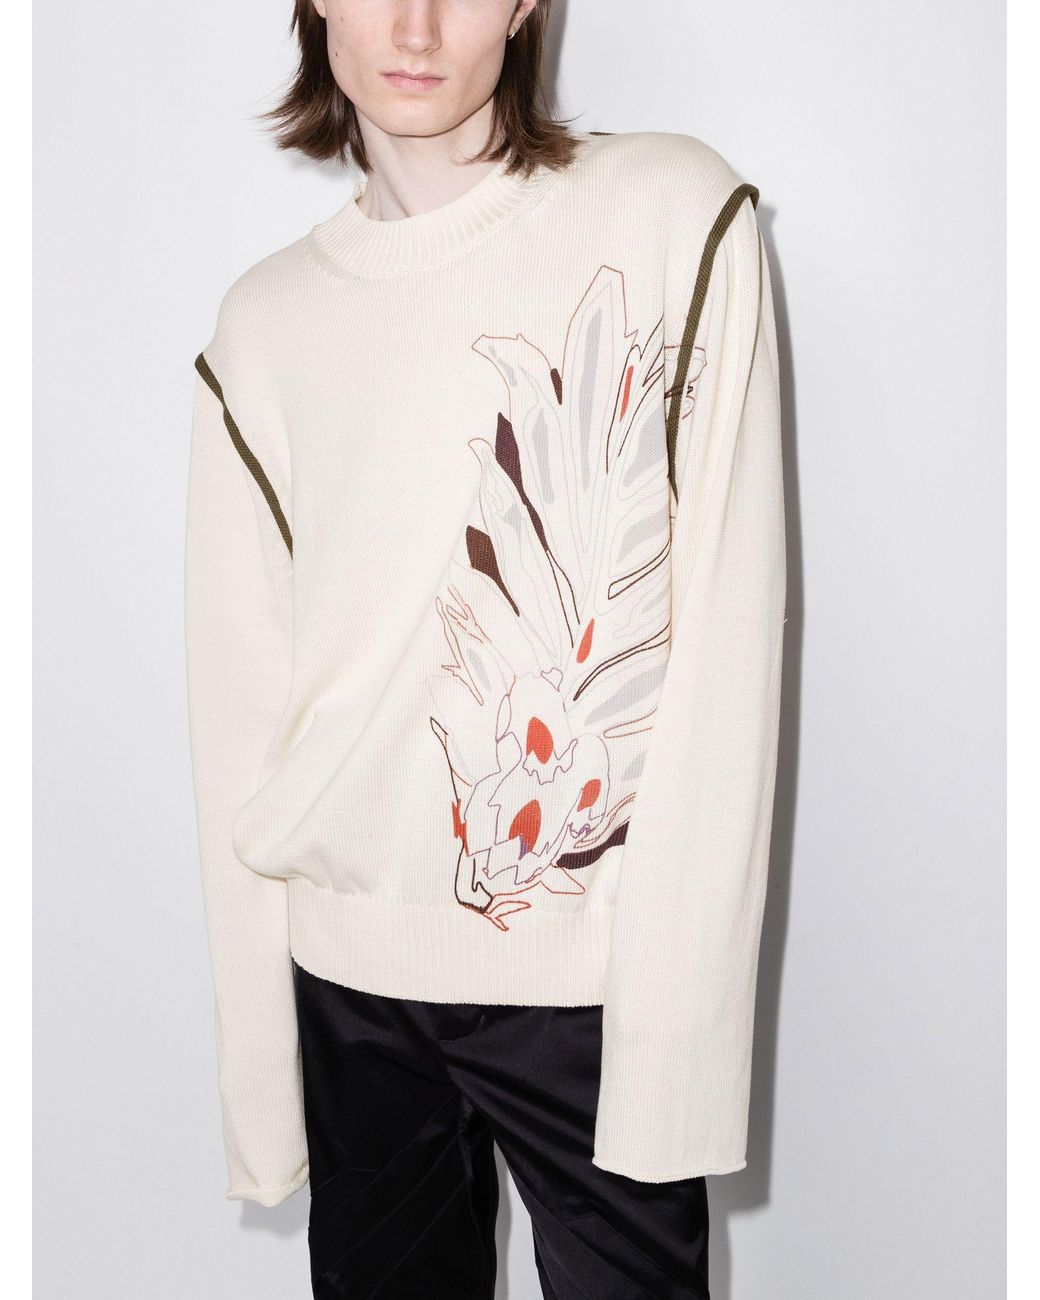 Kiko Kostadinov Men's Natural Future Print Cotton Sweater